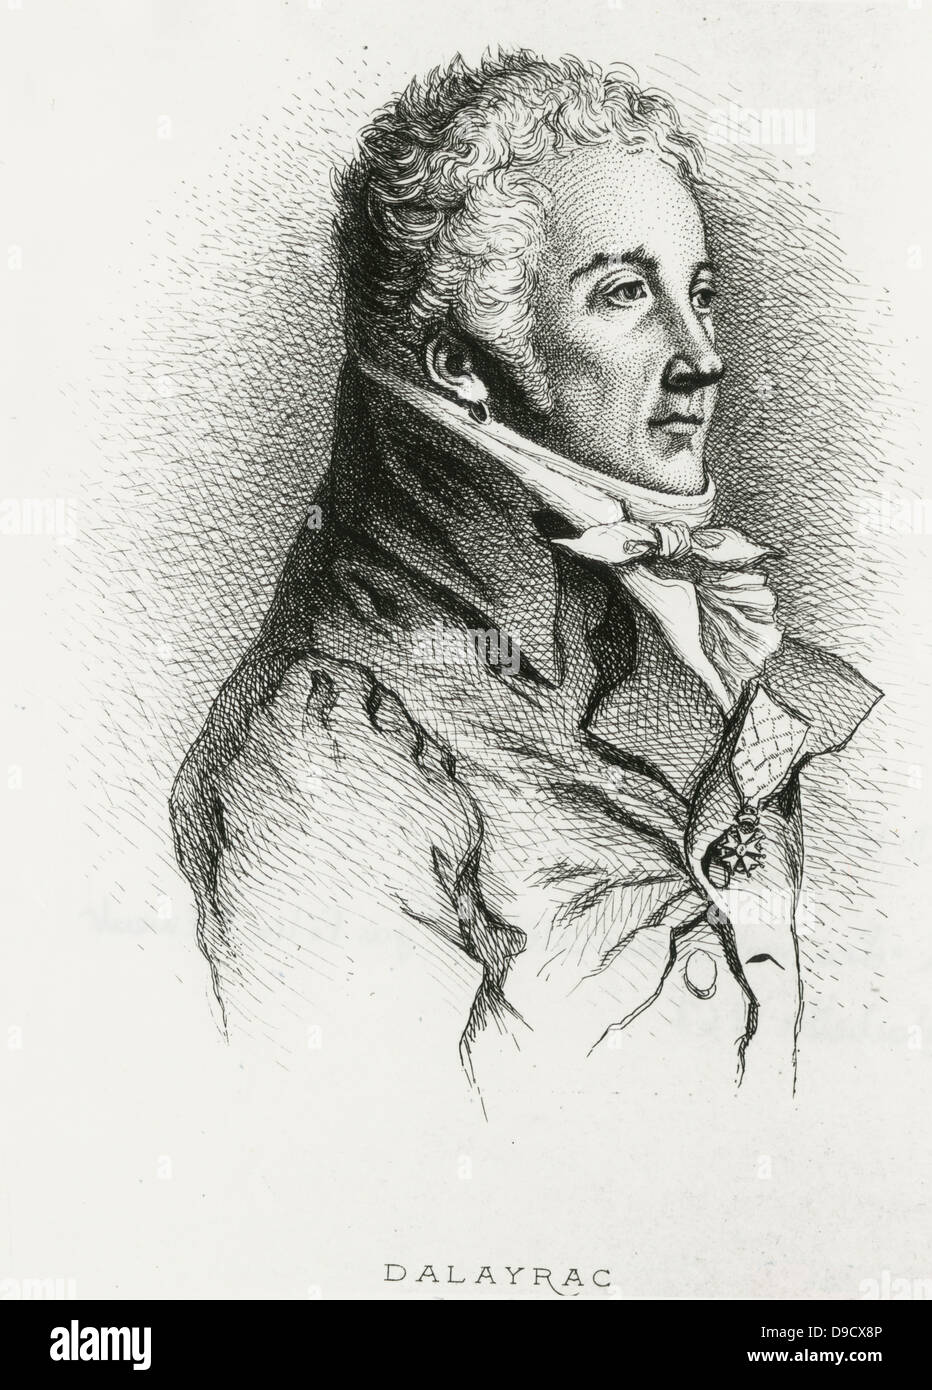 Nicolas-Marie Dalayrac oder dAlayrac (1753-1809) französischer Komponist der Oper Populr-Comiques. Porträt Kupferstich, 1868. Stockfoto